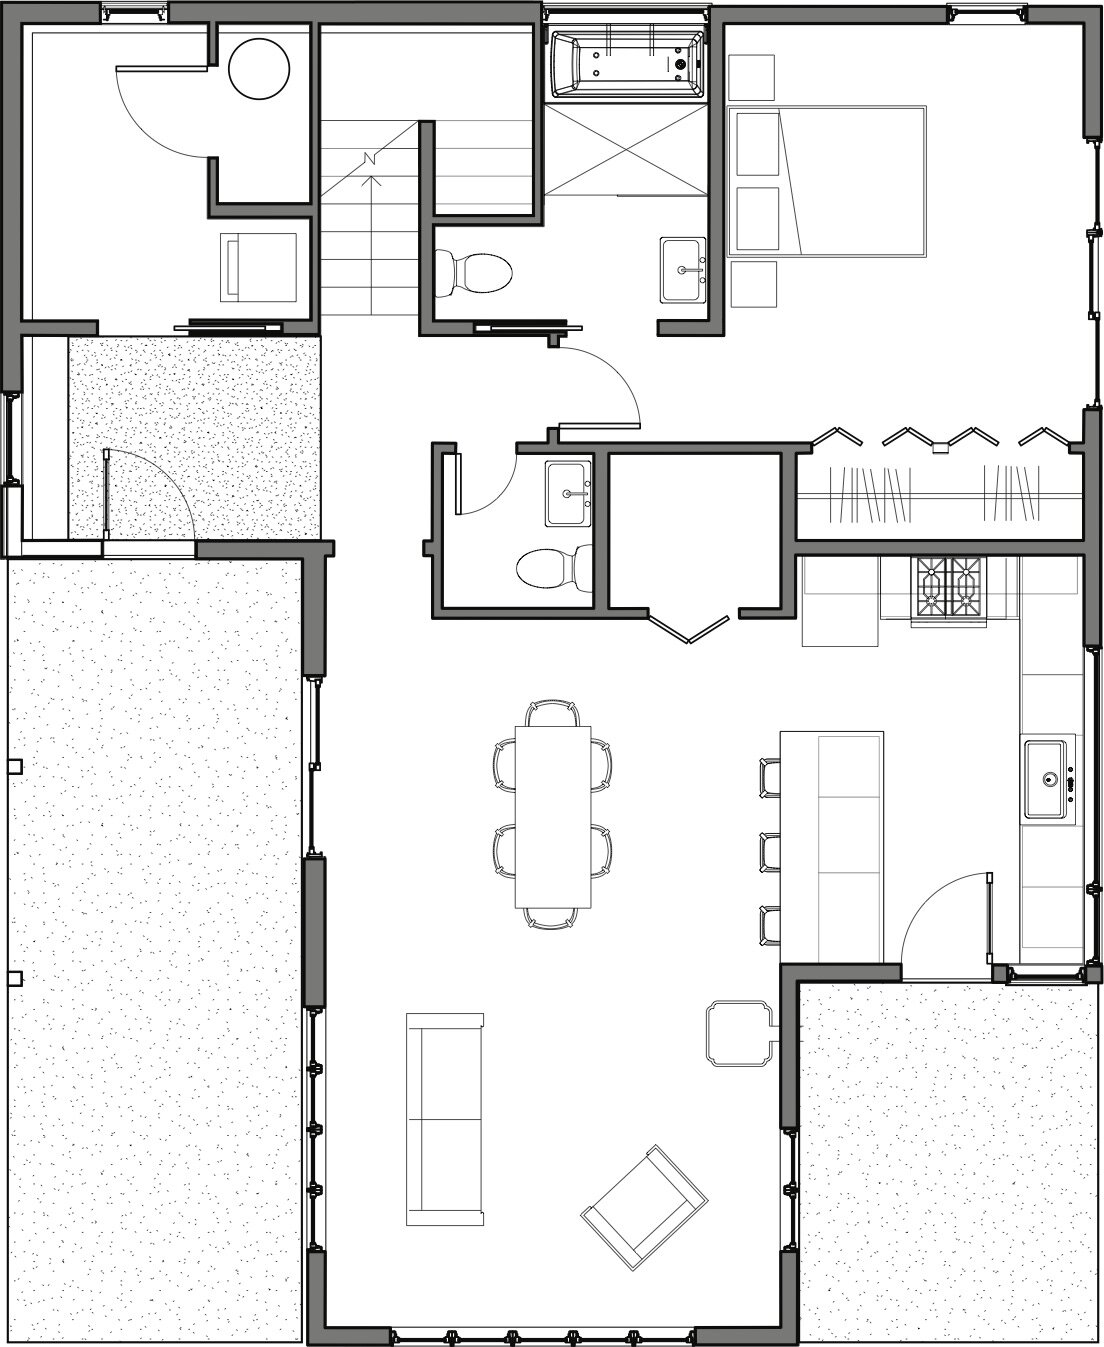 Bluebird - Sheet - A2-1 - FLOOR PLANS-Floor Plan - LEVEL 1.jpg